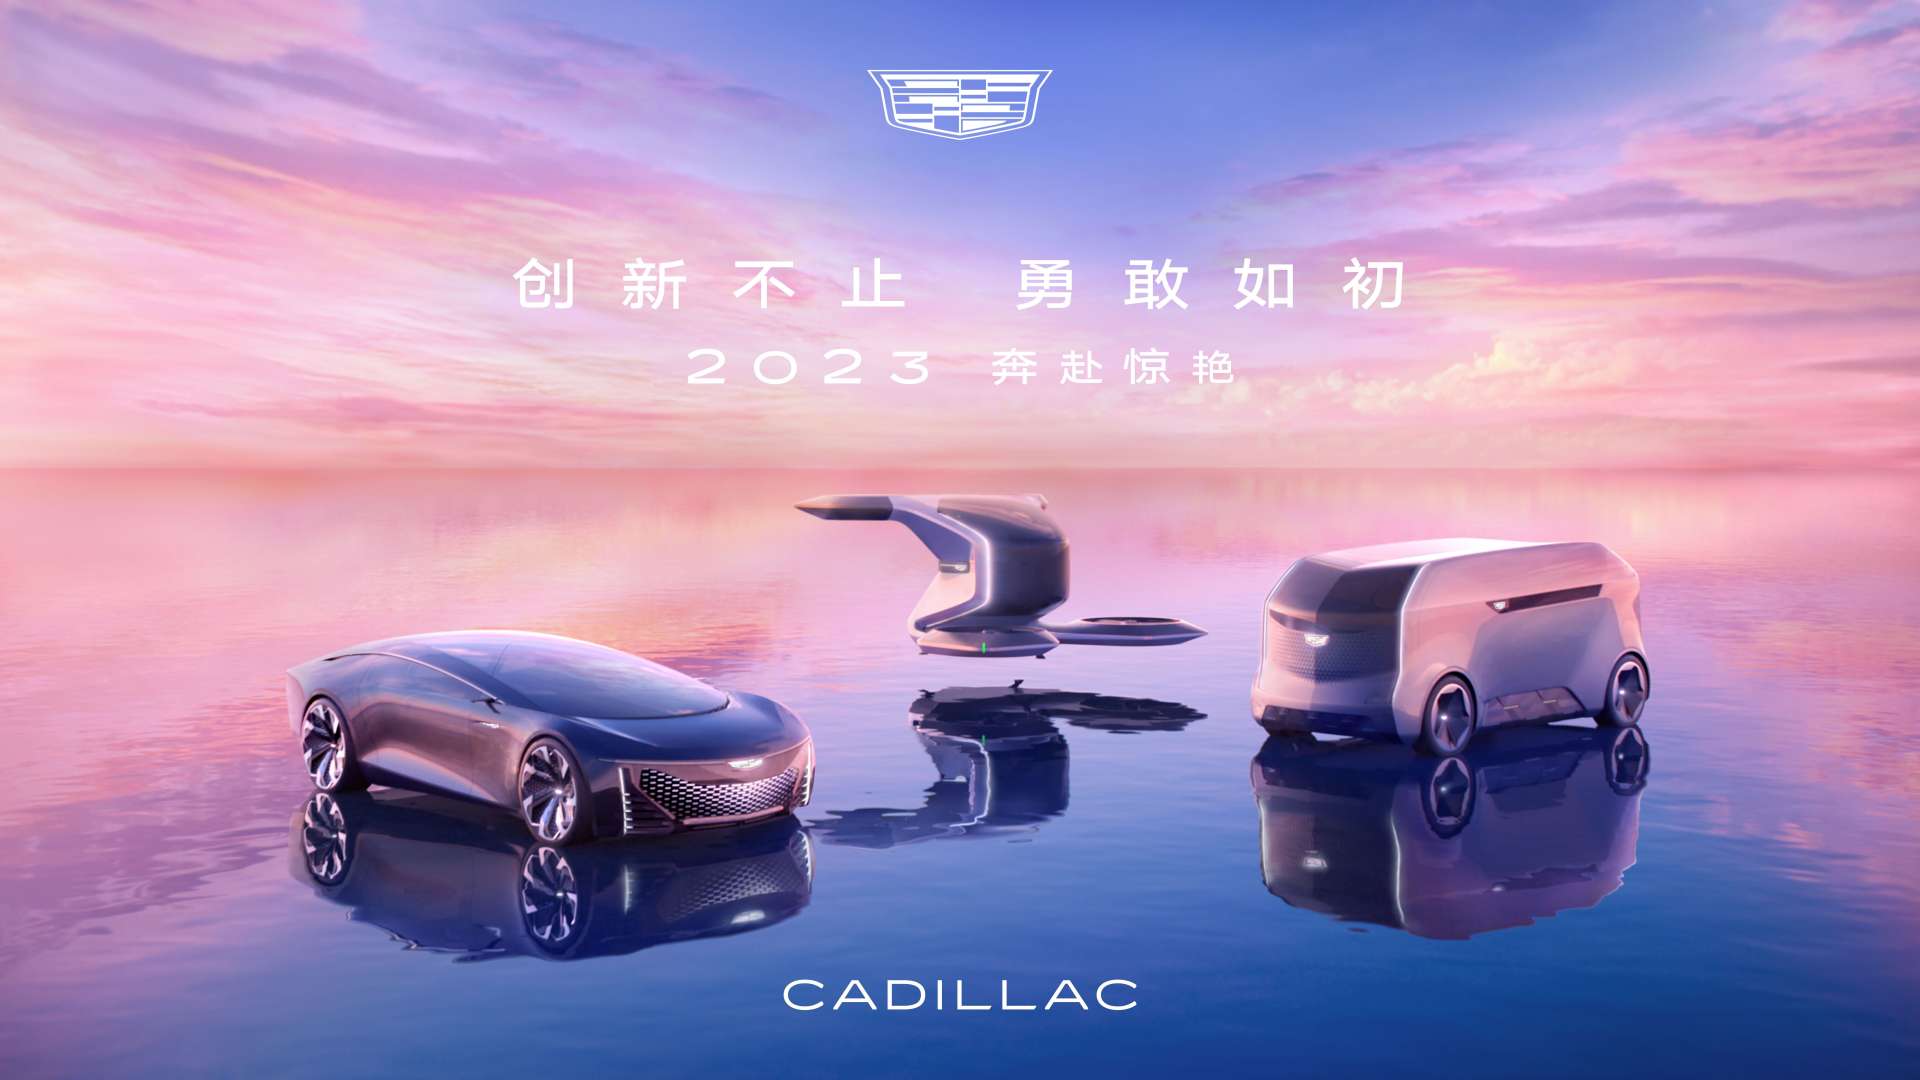 Cadillac凯迪拉克 120周年